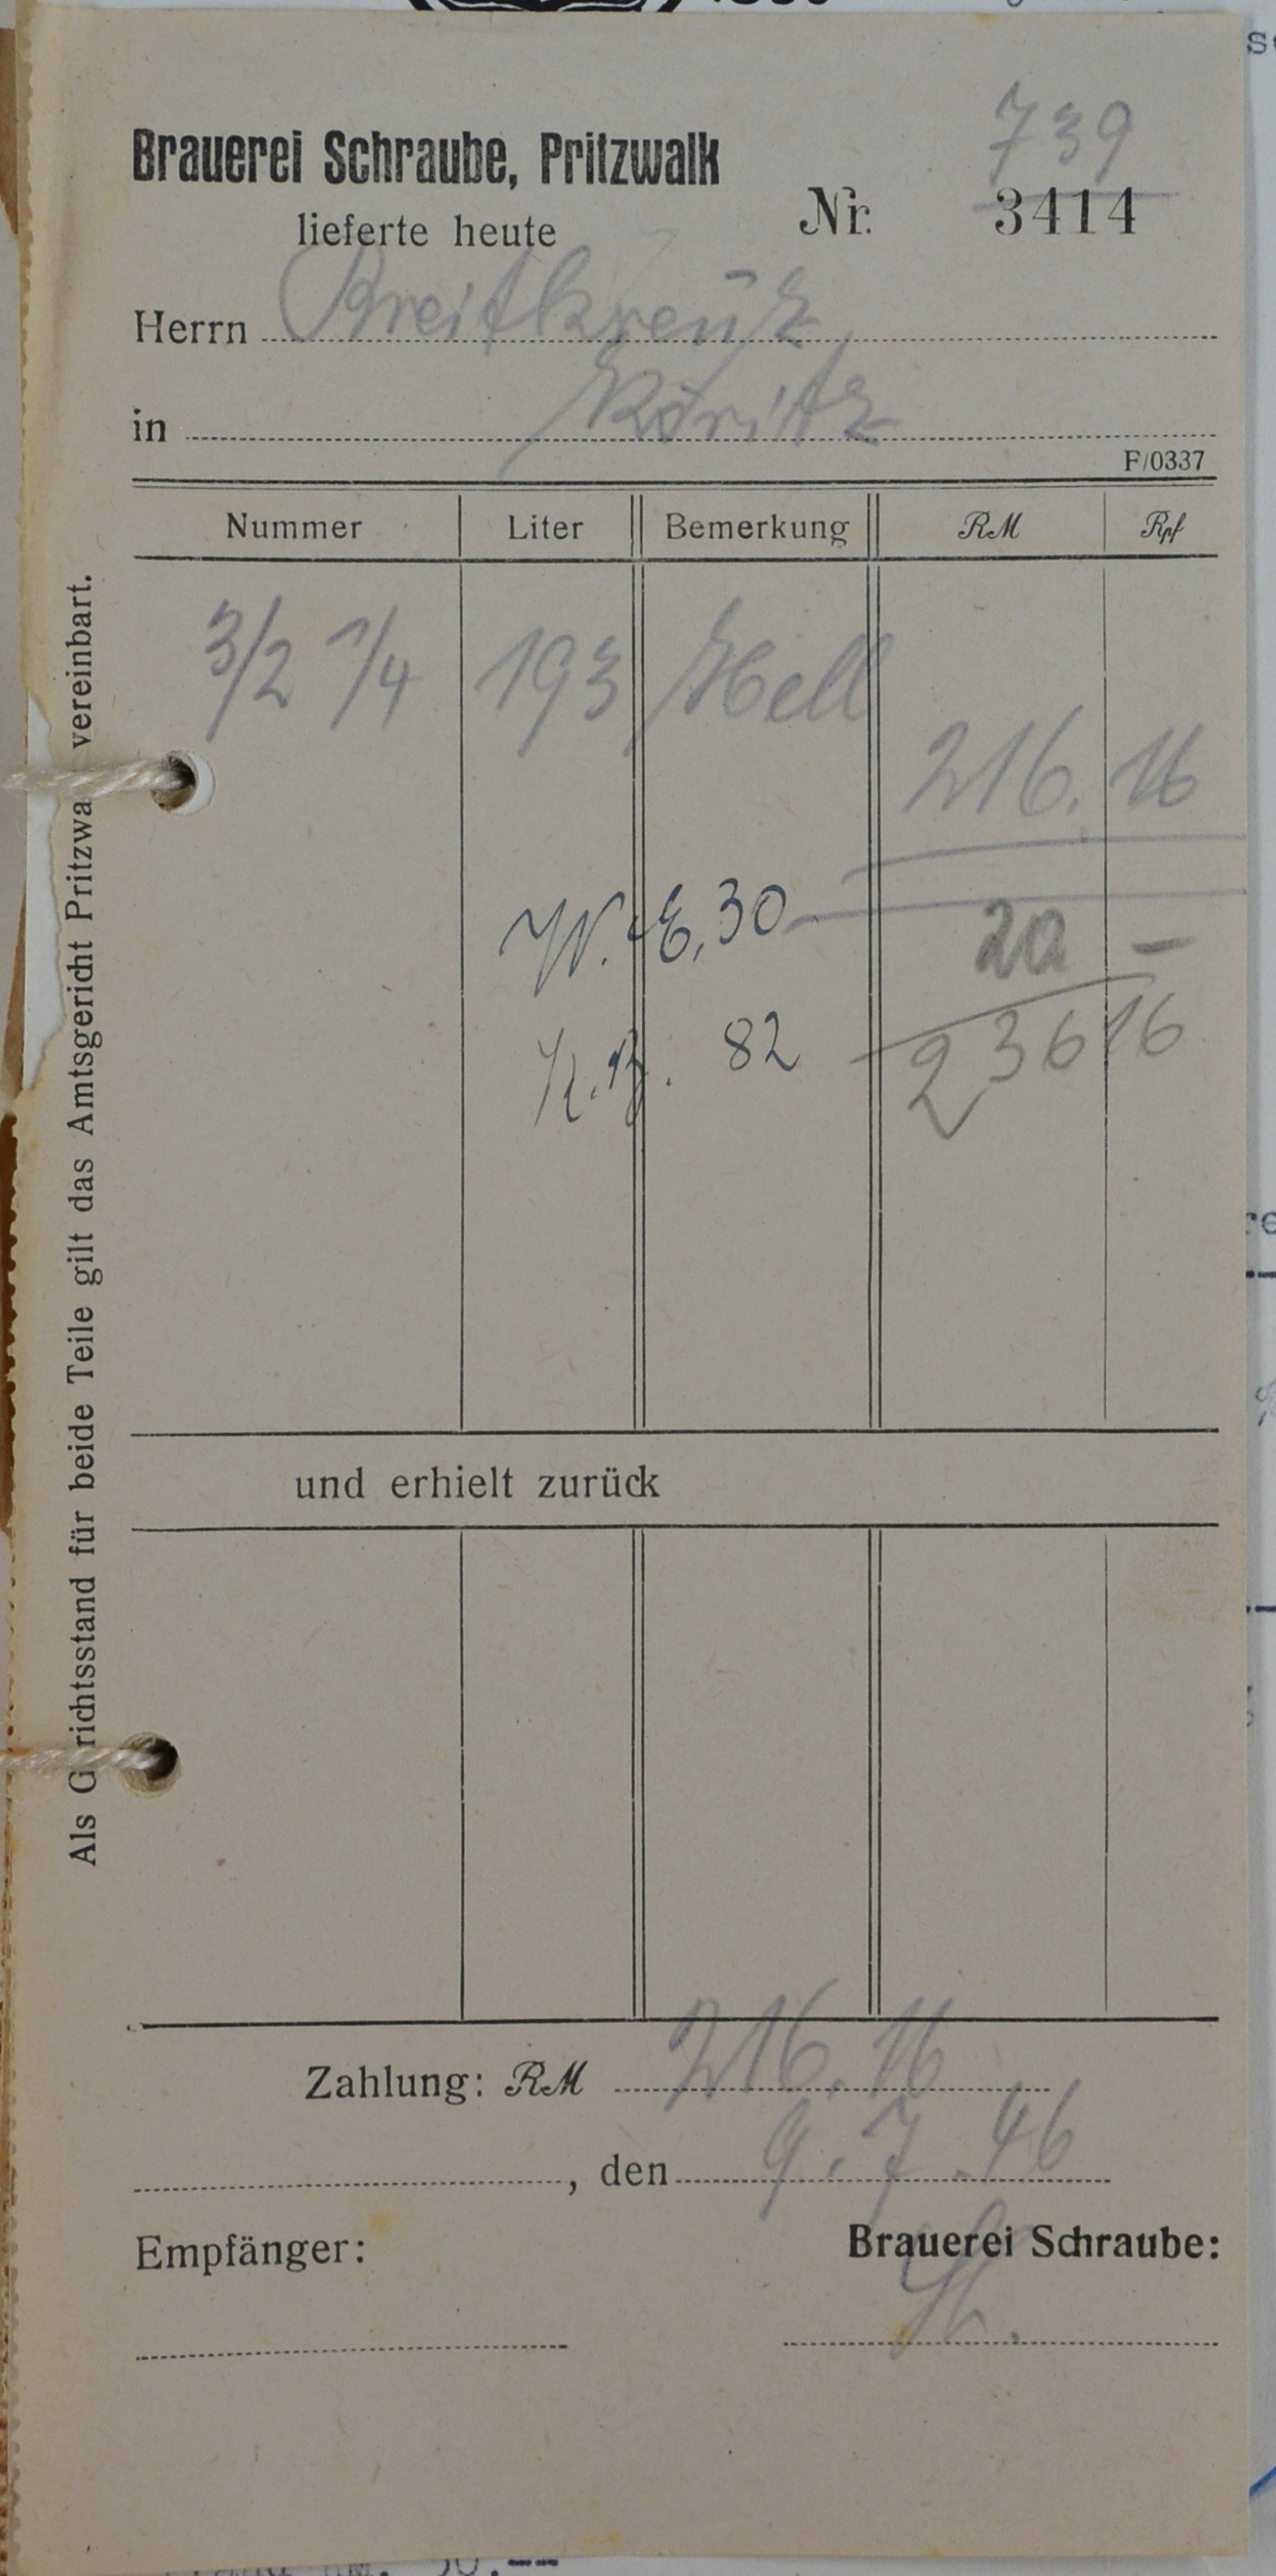 Rechnung von der Brauerei Schraube aus Pritzwalk für Wilhelm Breitkreuz (DDR Geschichtsmuseum im Dokumentationszentrum Perleberg CC BY-SA)